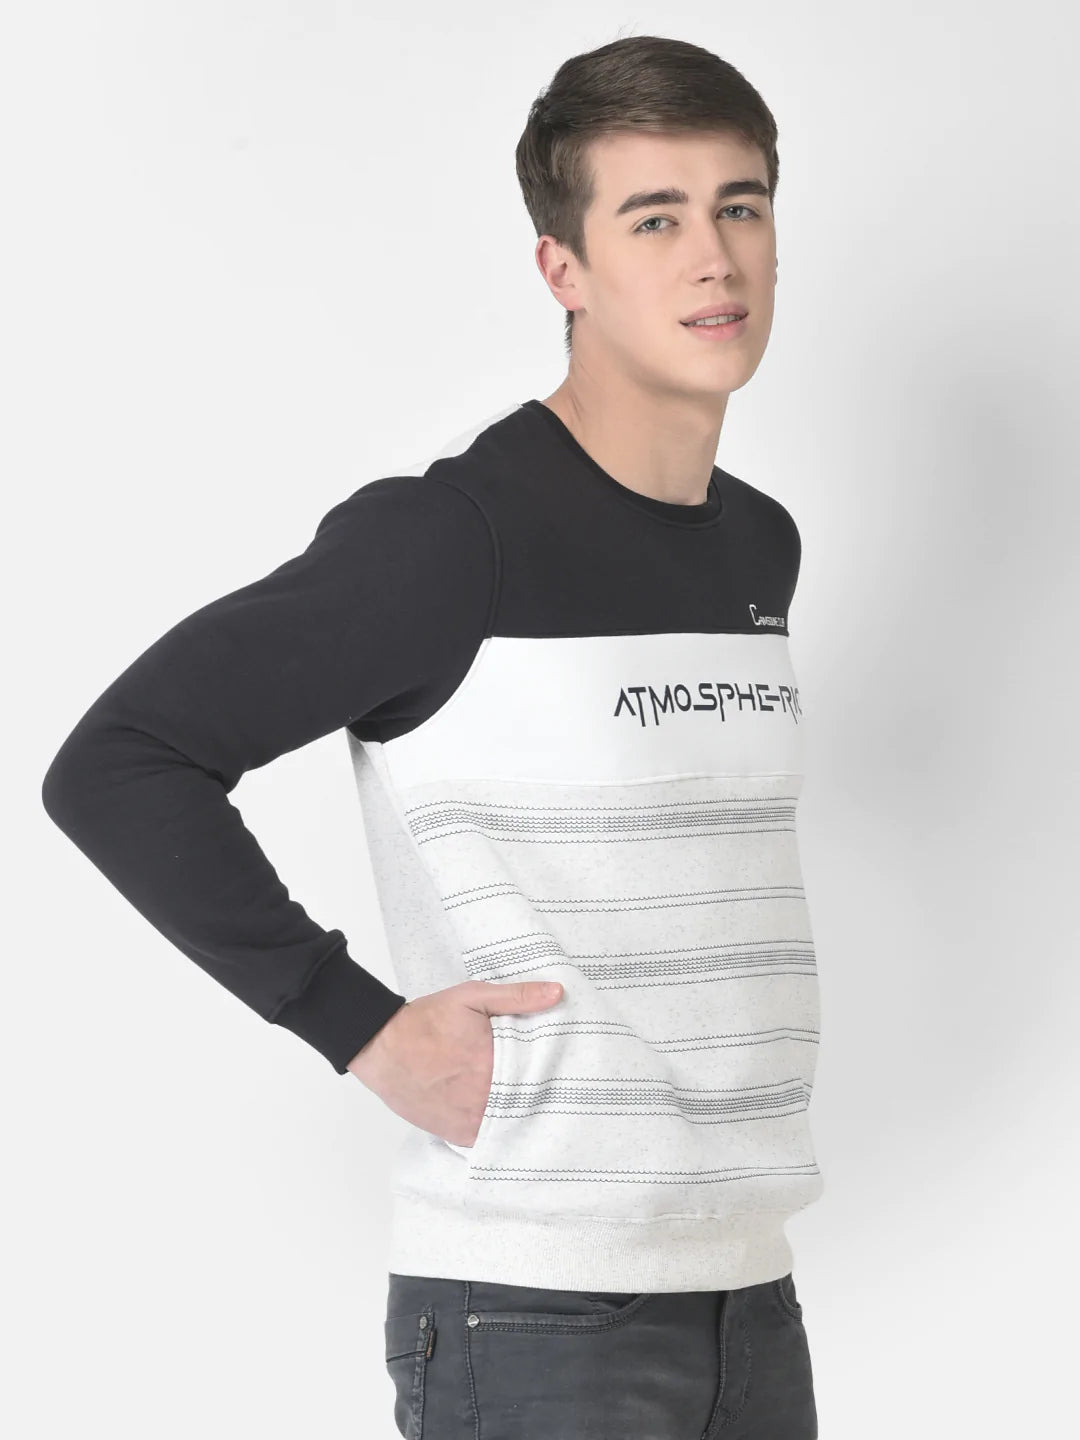  Grey Melange Atmospheric Sweatshirt 